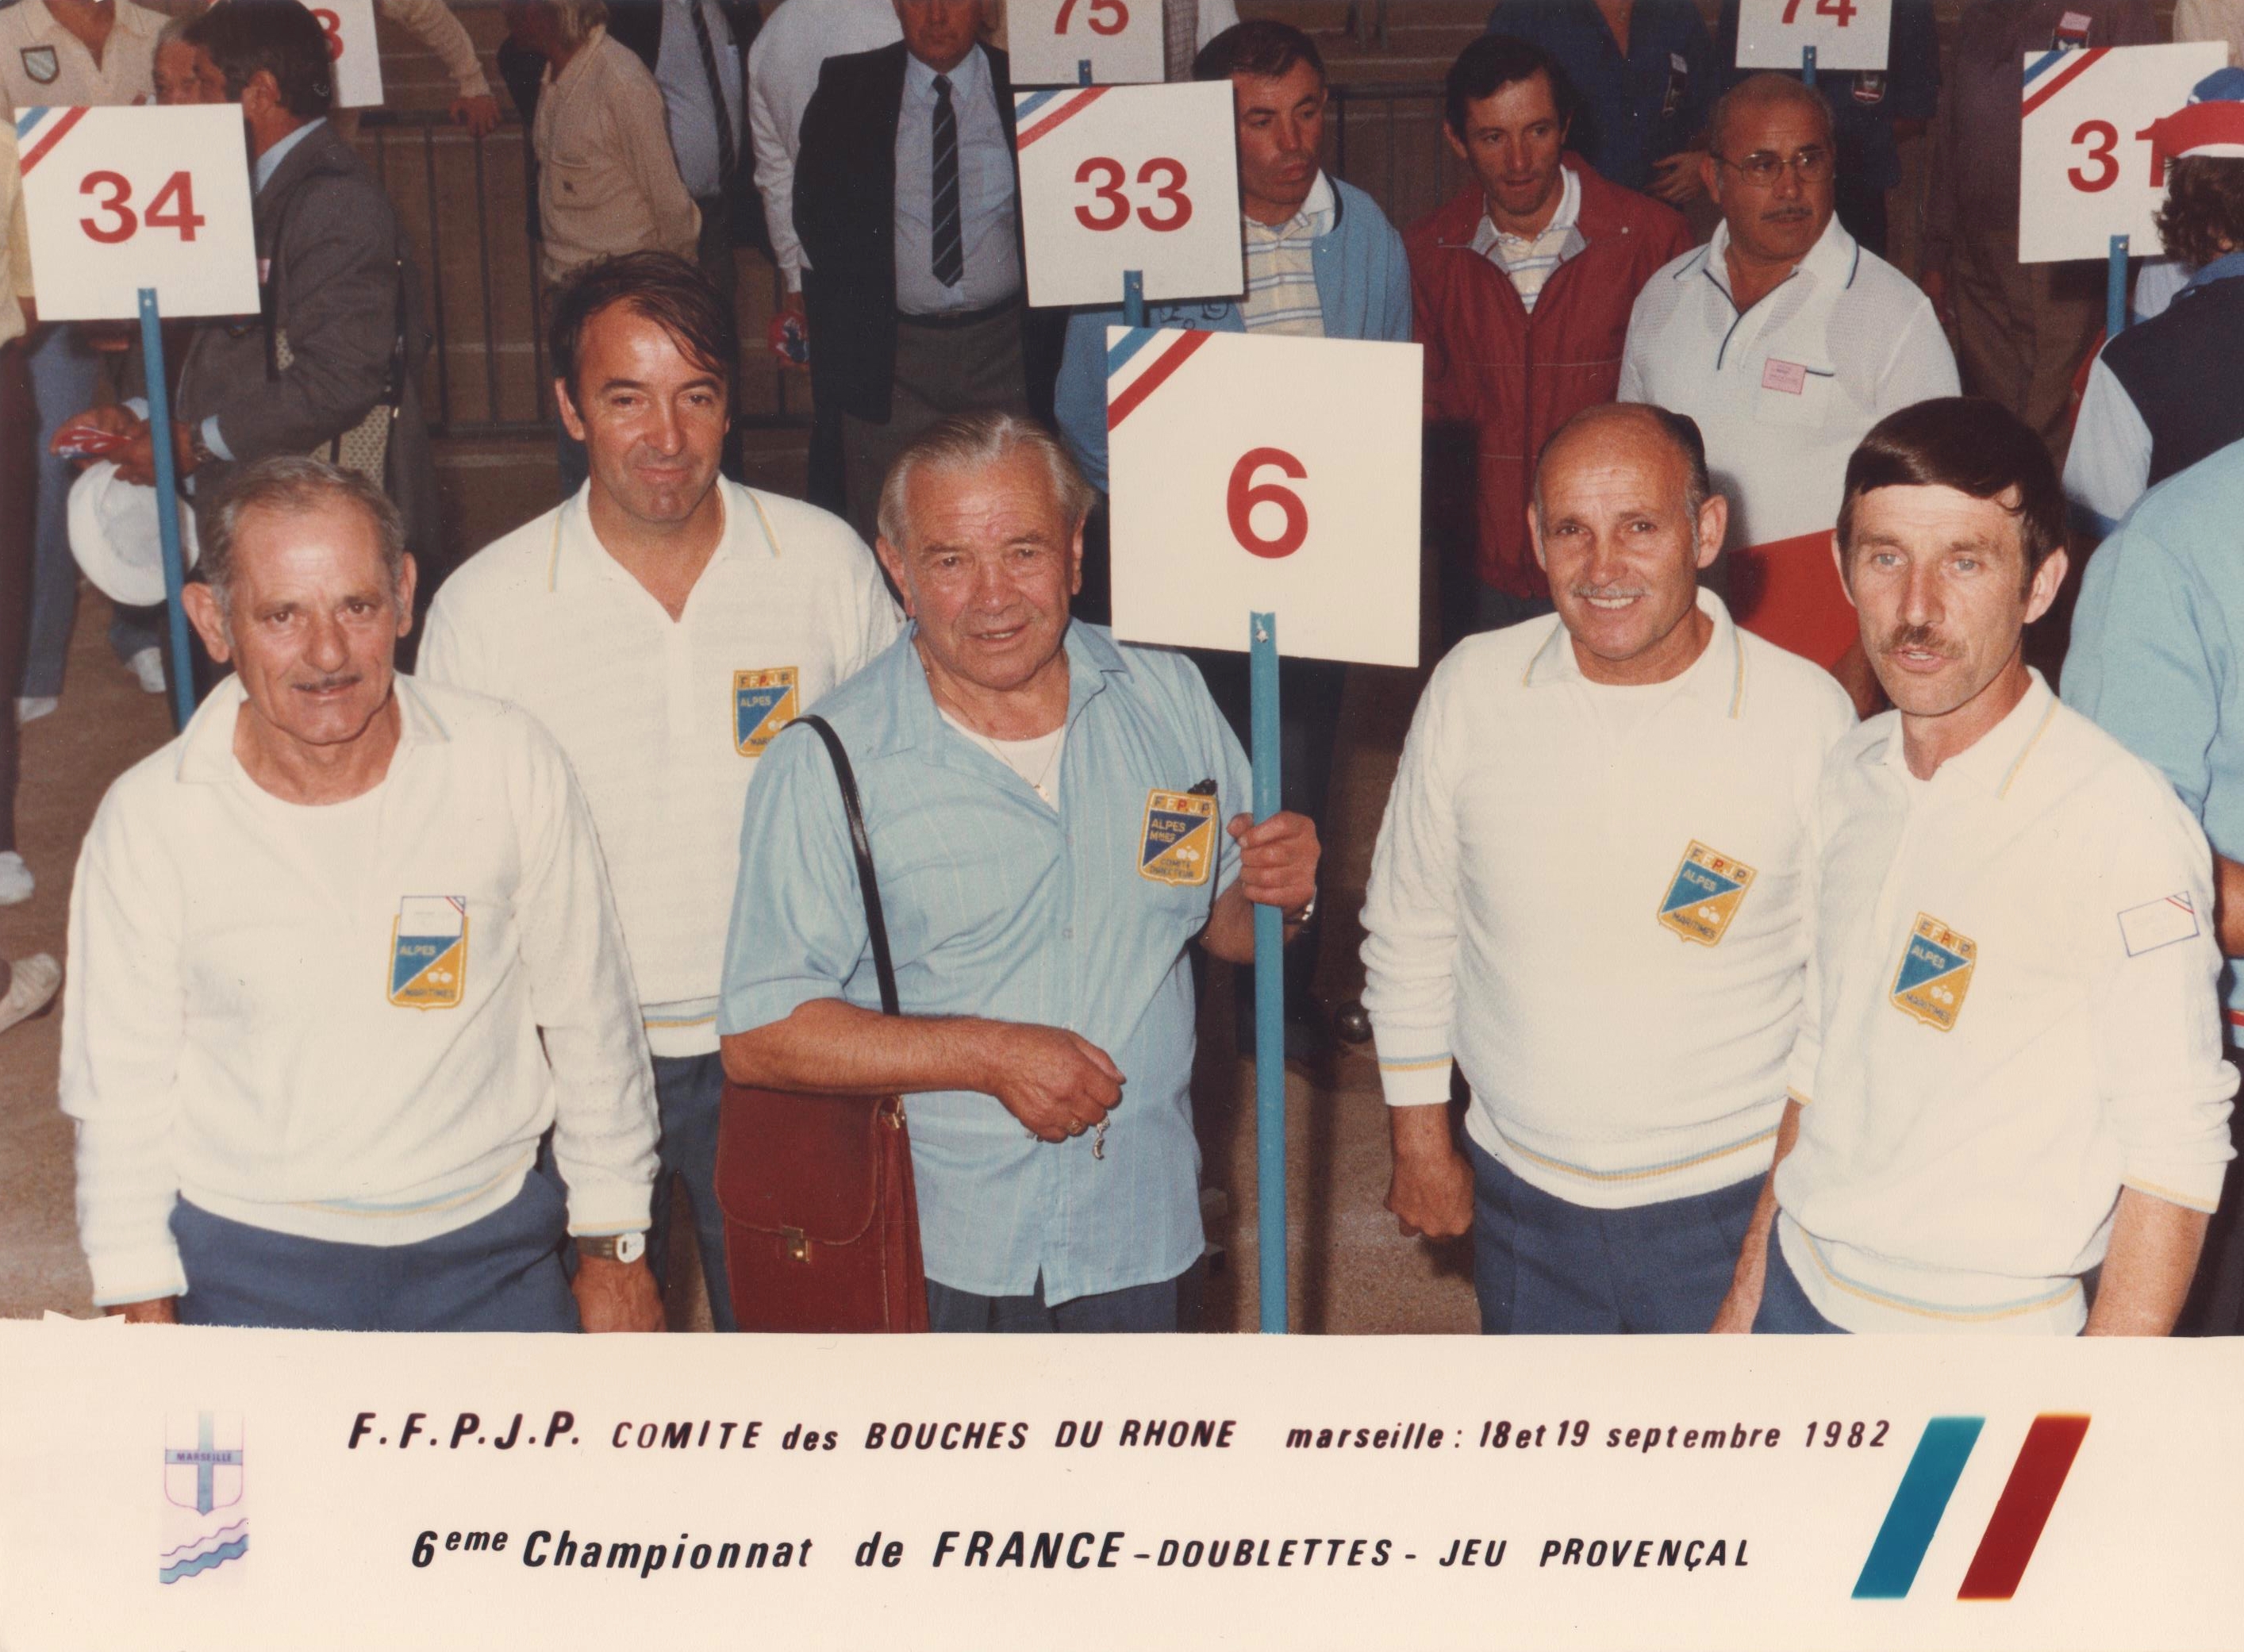 Les 2 doublettes du 06 qualifiées pour le championnat de France 1982 au Jeu Provençal : CHECCONI-RANCUREL et MAILLAN-MOSCIONI